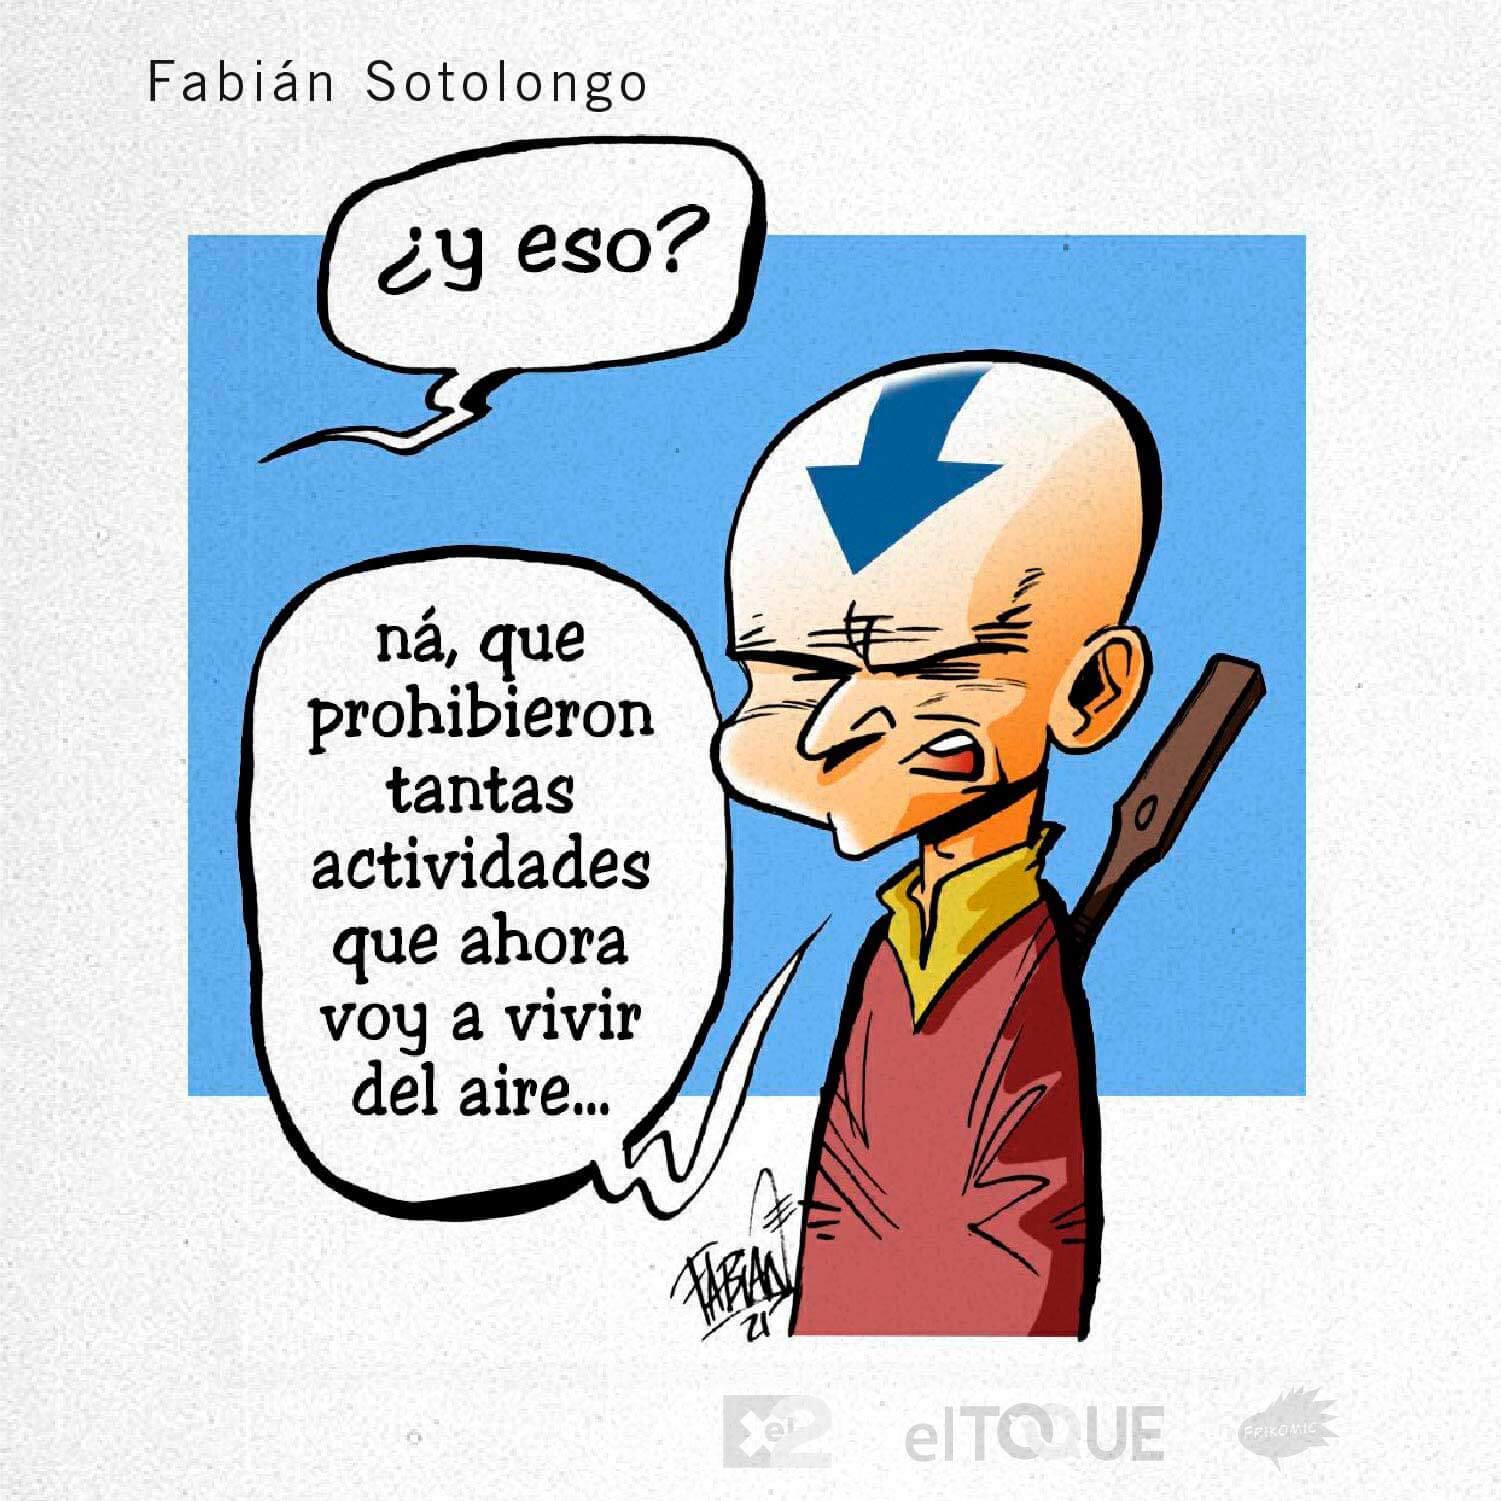 21-02-Sotolongo-Fabian-PROHIBICIONES-SECTOR-PRIVADO-CUBA.jpg